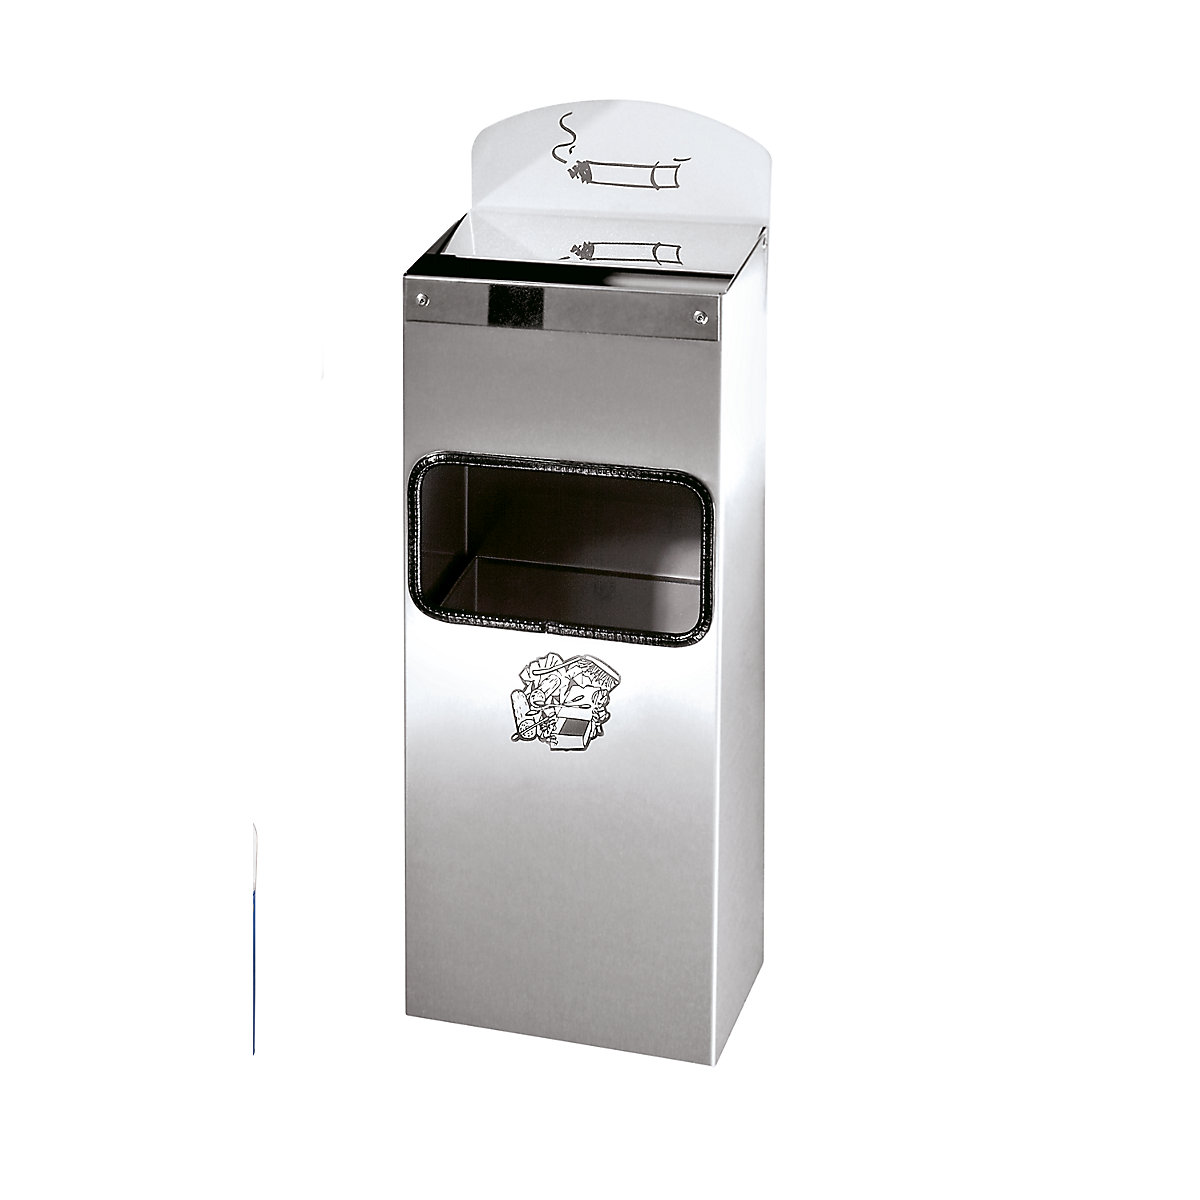 VAR – Kombinált fali hamutartó hulladékbedobó nyílással, ma x szé x mé 505 x 200 x 125 mm, nemesacél, rozsdamentes